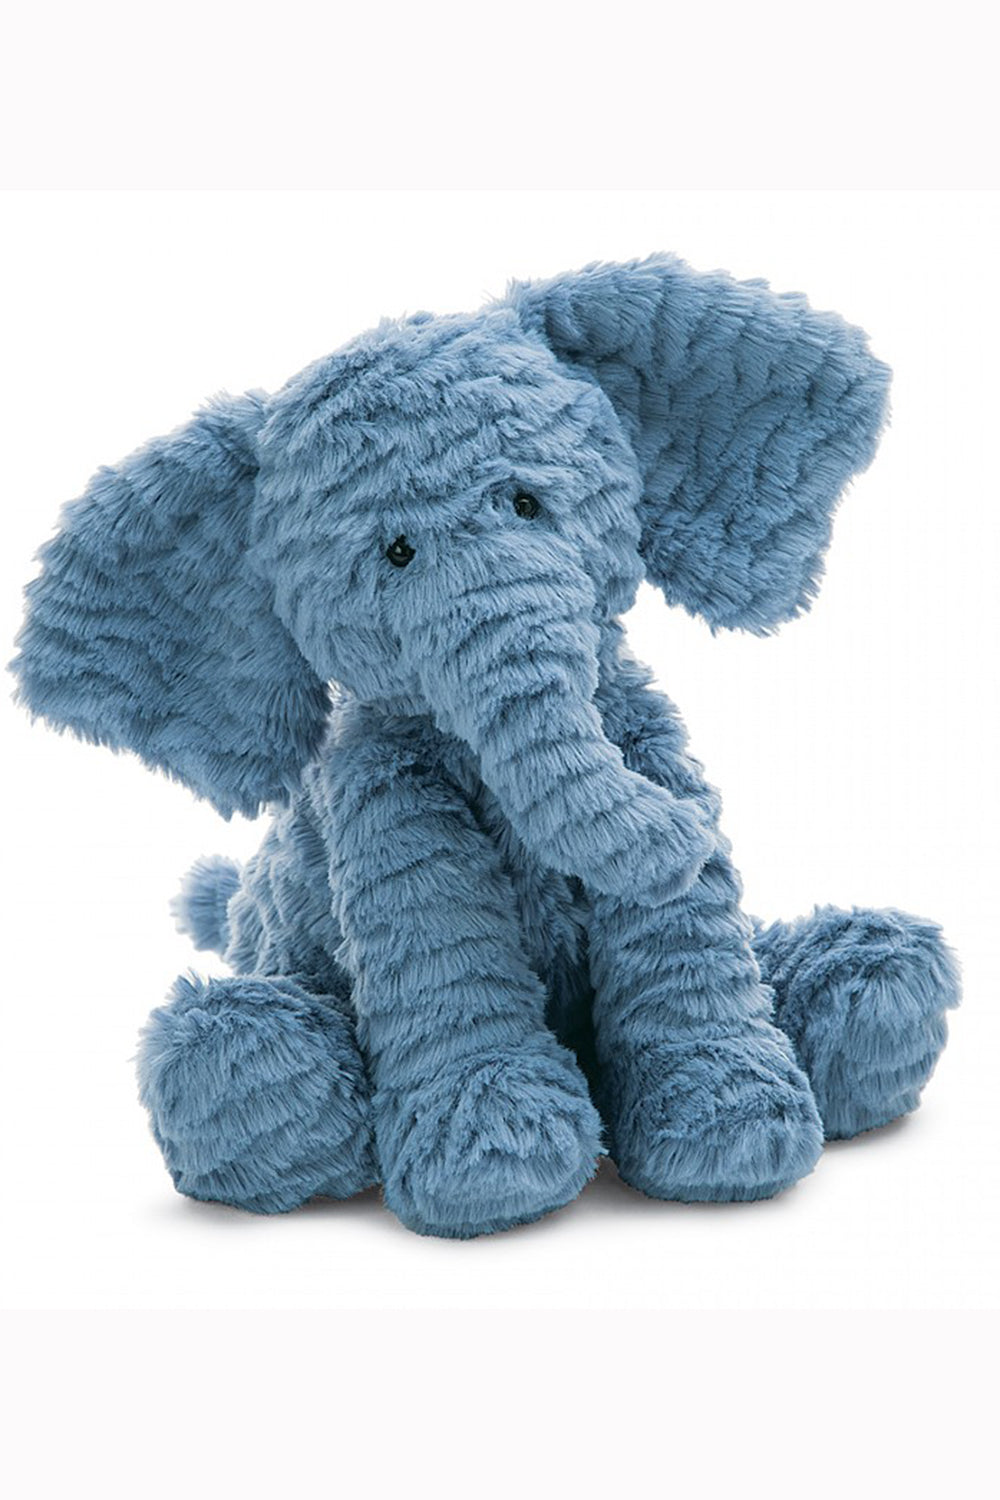 JELLYCAT Fuddlewuddle Stuffed Elephant